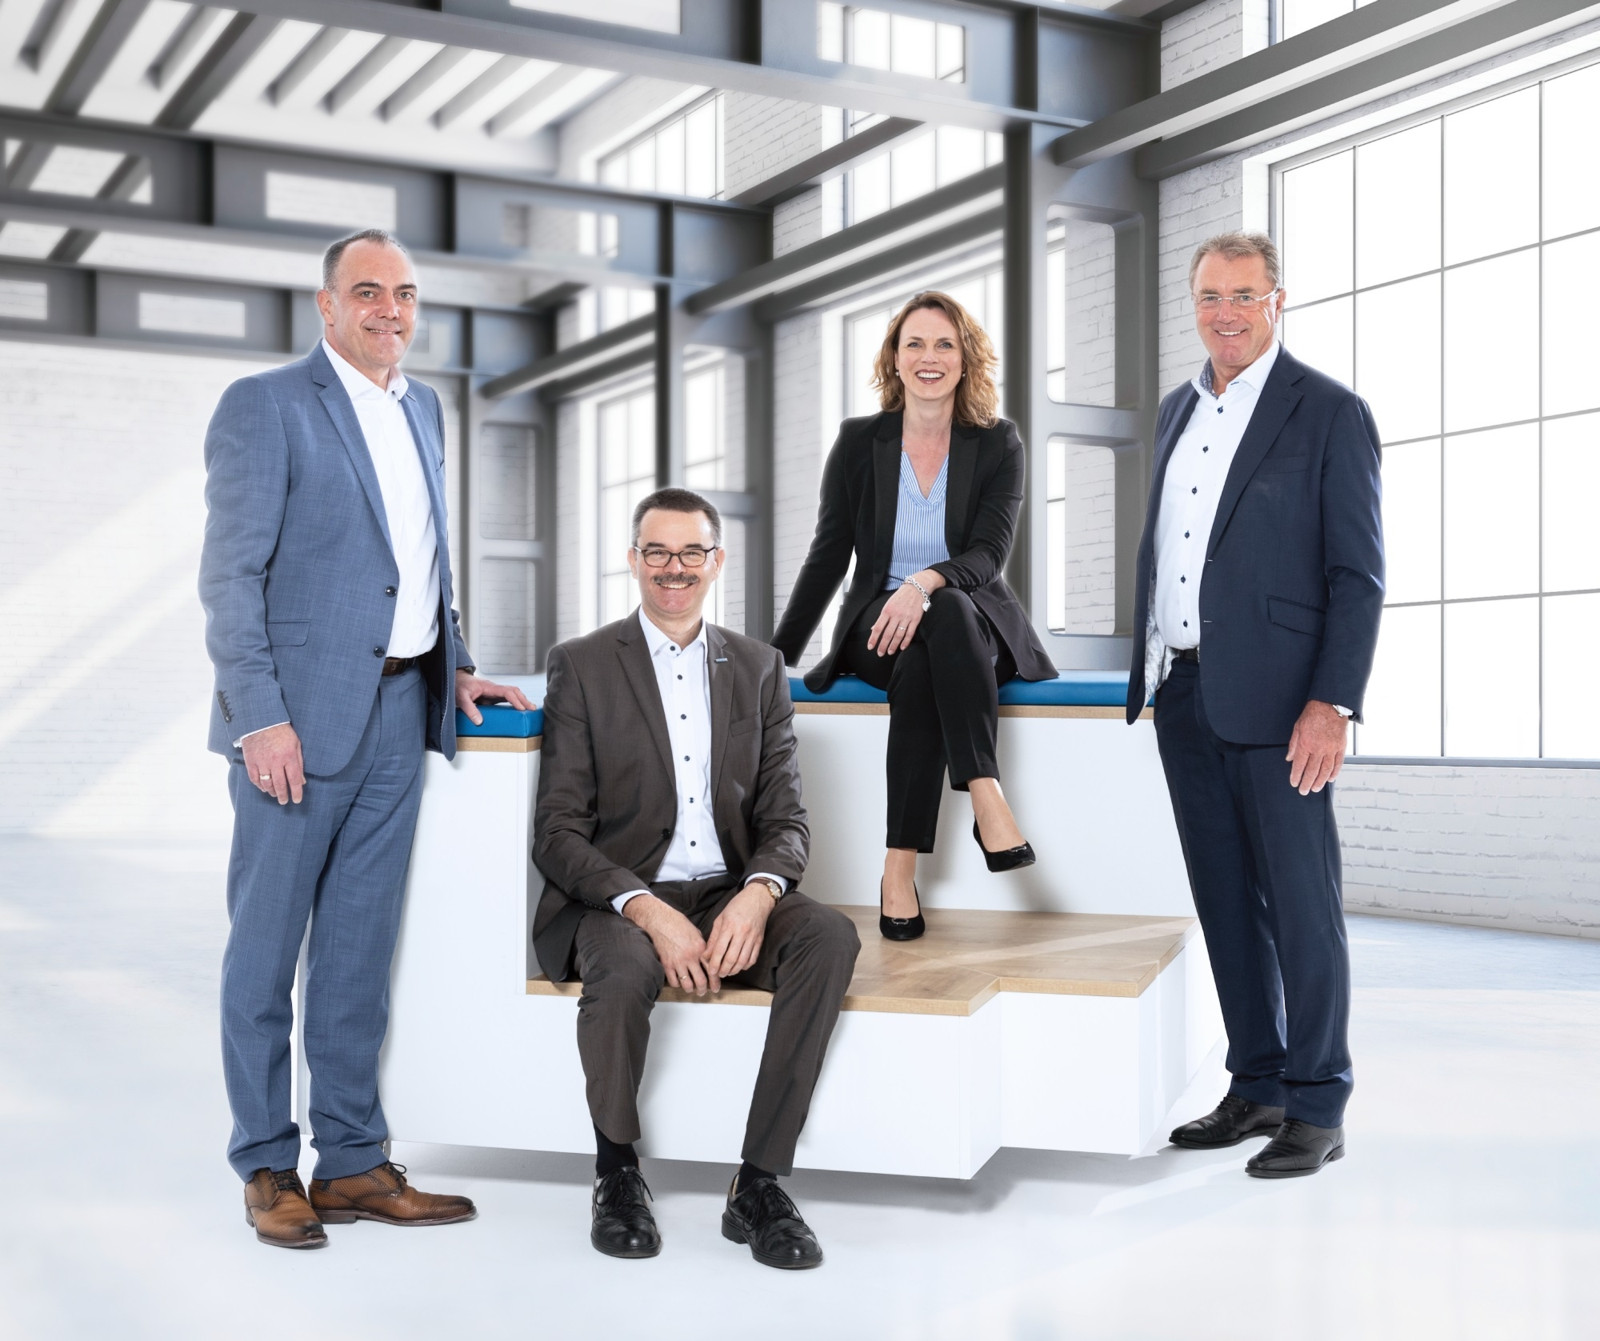 Große Freude über eine Viertelmilliarde Umsatz - die Managing Directors von Denios: Horst Rose, Alexander Dolipski, Ricarda Fleer sowie Helmut Dennig.